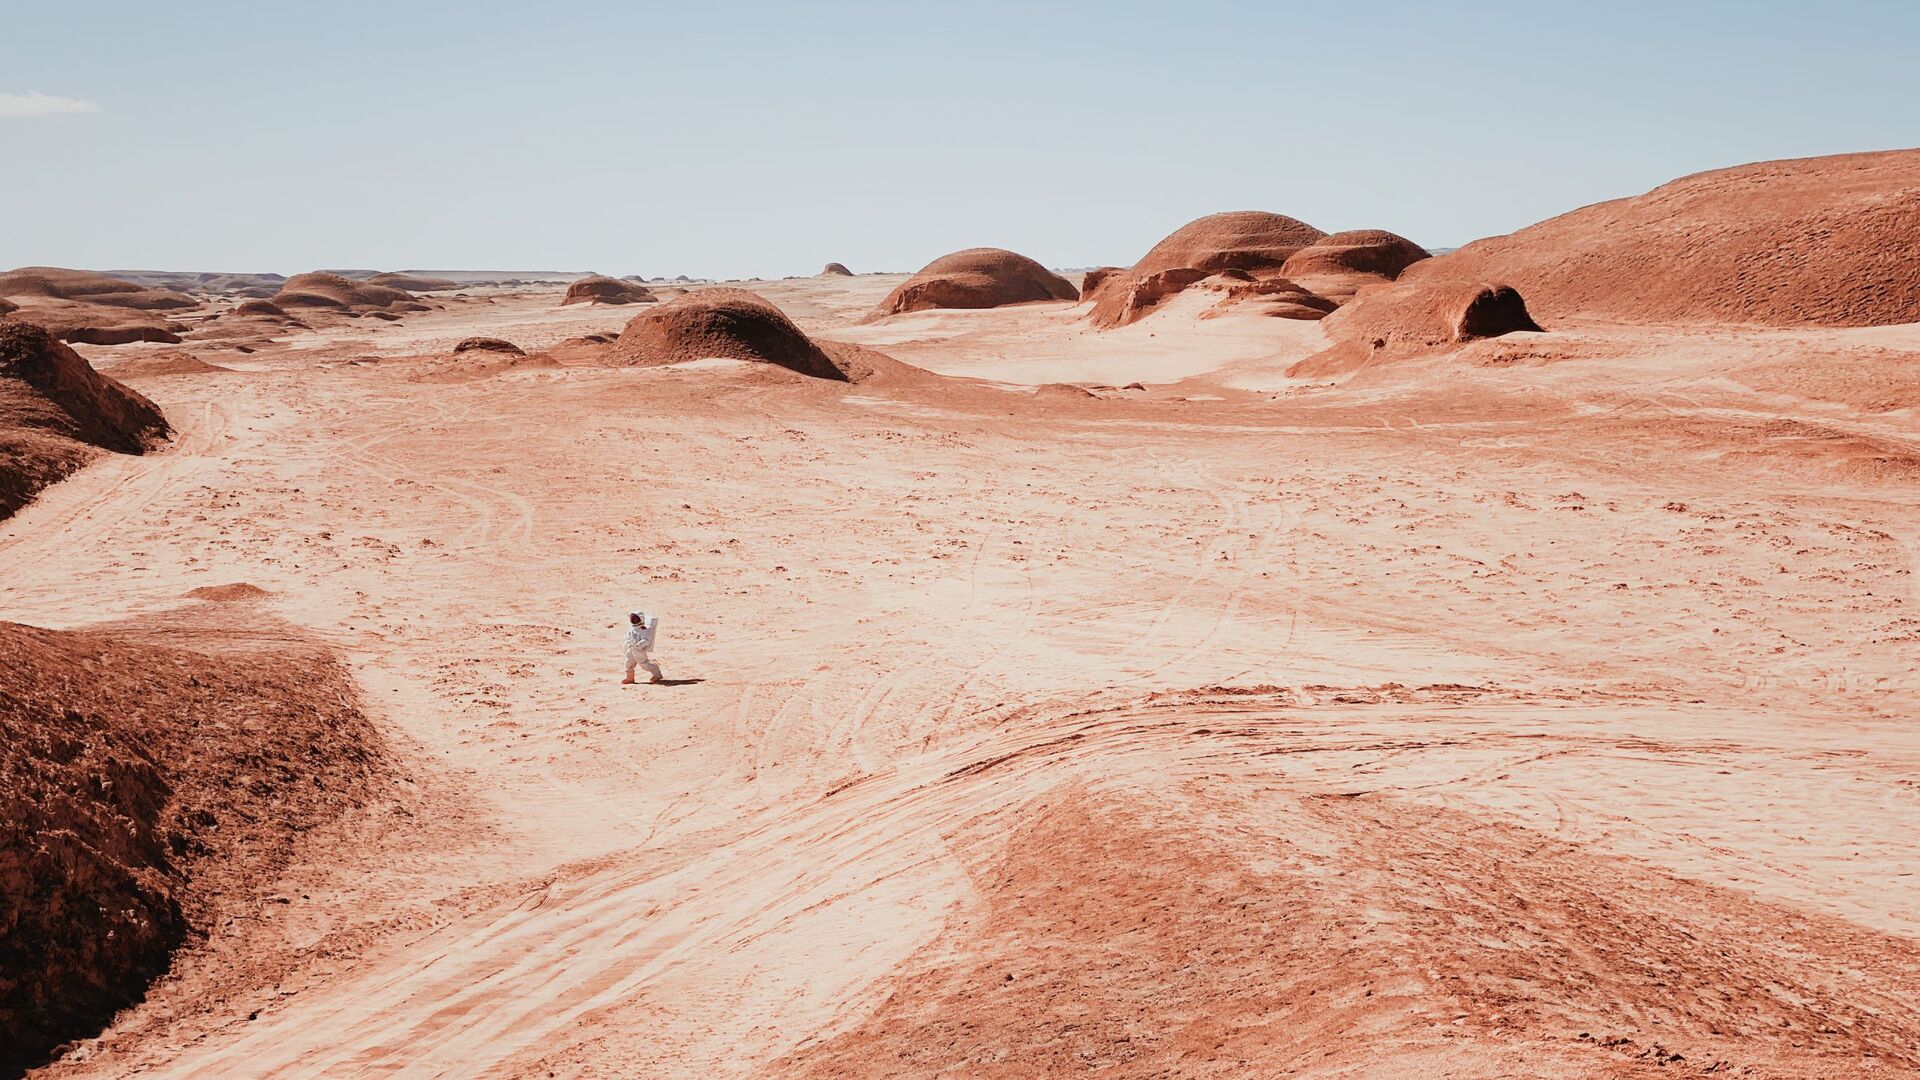 صورة نزهة على المريخ، للمصور الصيني دان ليو، الحائز على المركز الأول في ترشيحات مصور العام من  مسابقة التصوير الدولية IPPAWARDS 2021 - سبوتنيك عربي, 1920, 18.08.2021